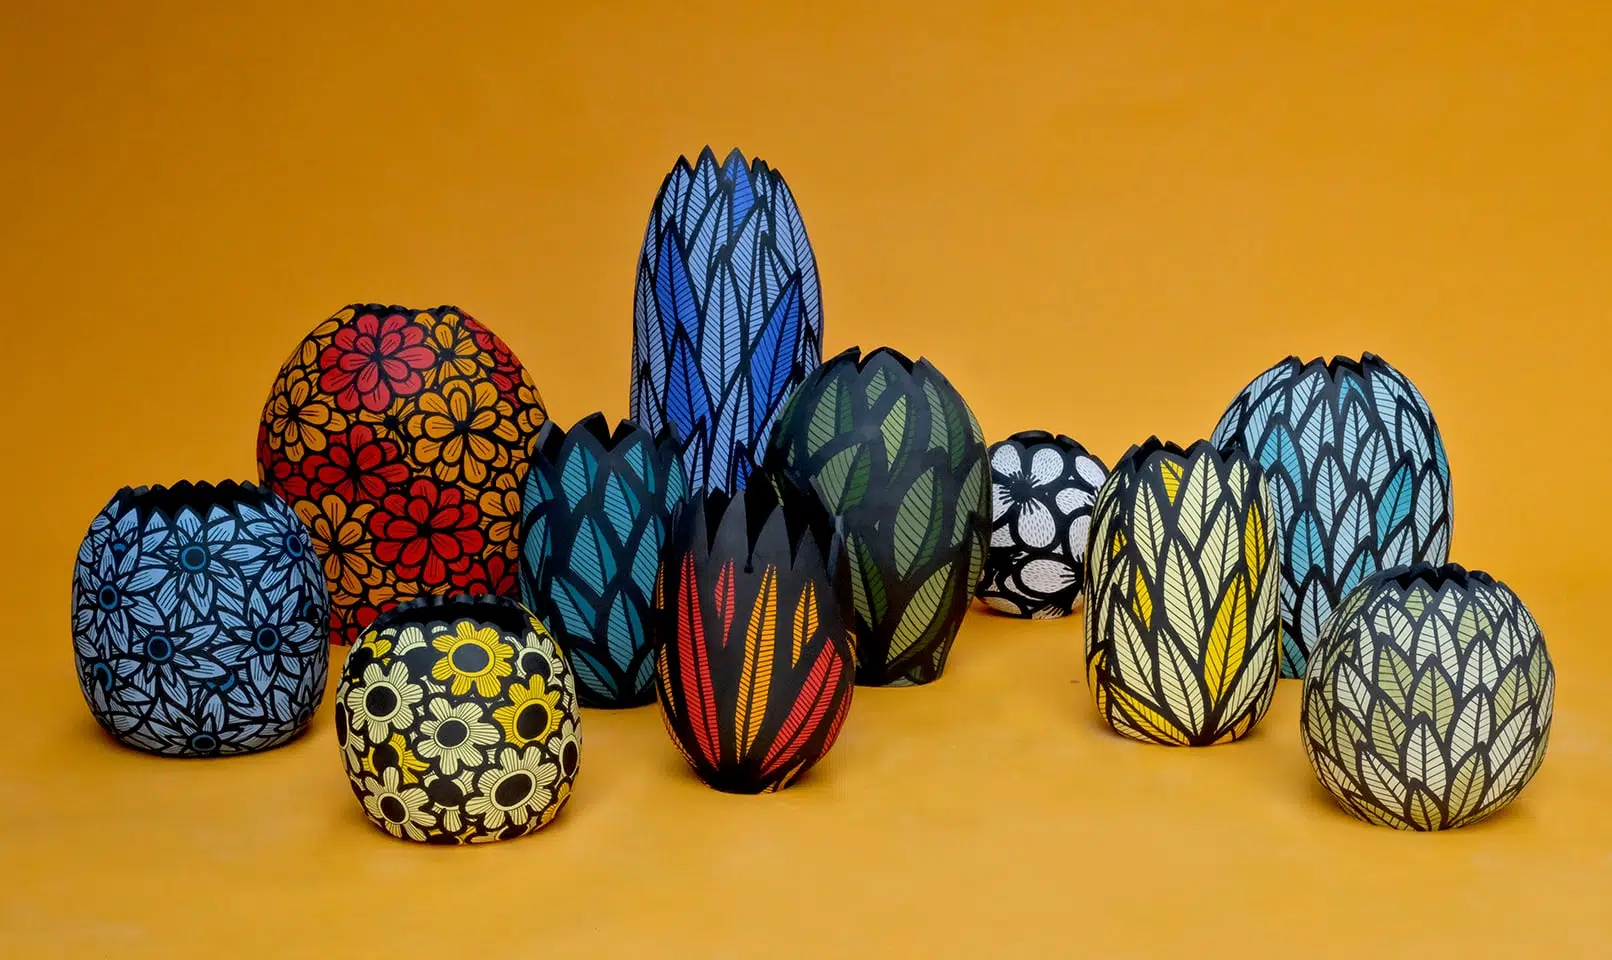 Ariana Heinzman formas botamimcas vasijas de ceramica